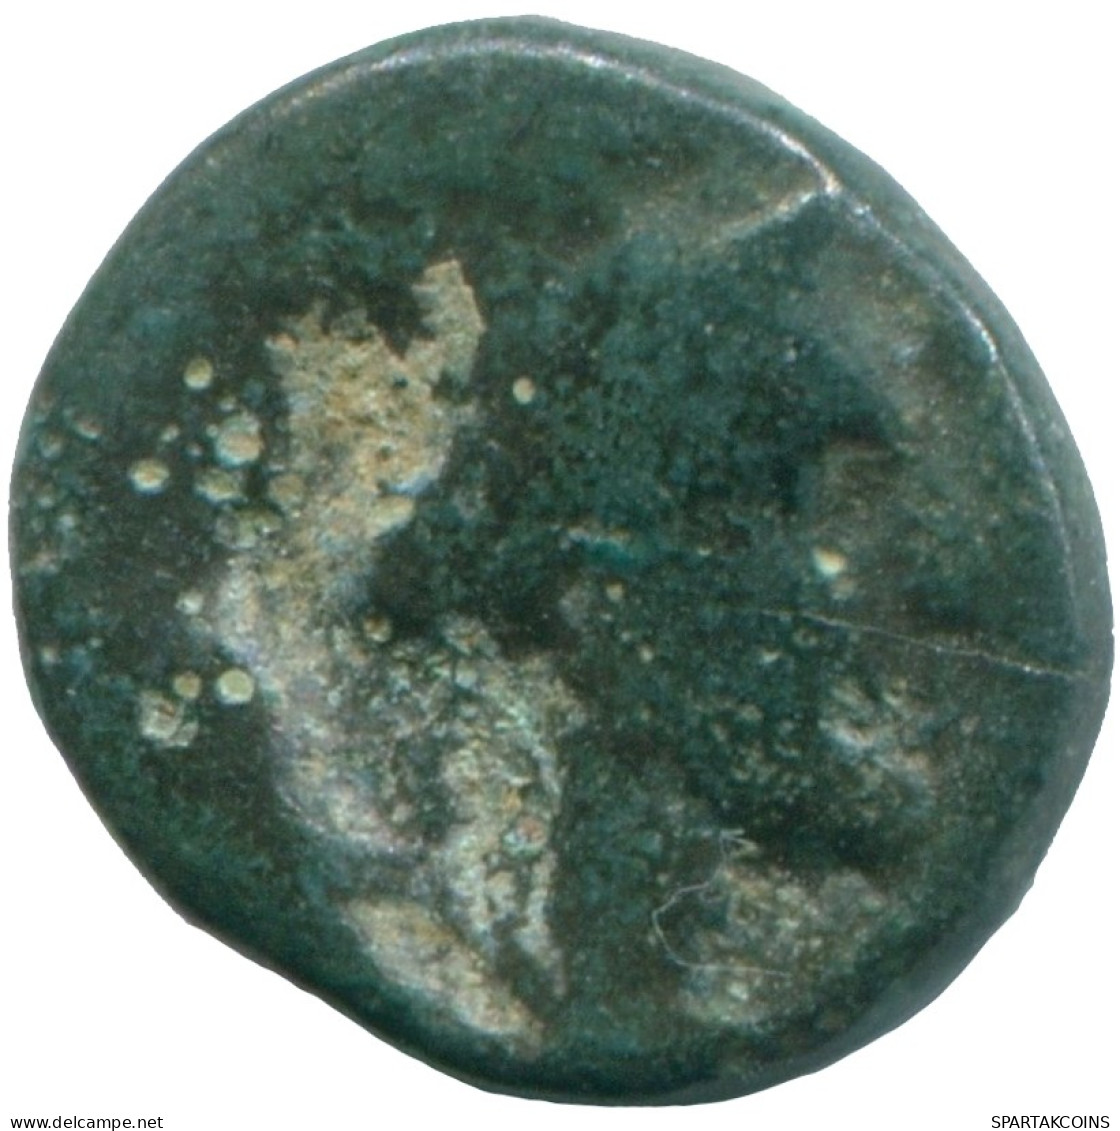 Auténtico Original GRIEGO ANTIGUOAE Moneda 1.1g/11.1mm #ANC12931.7.E.A - Grecques